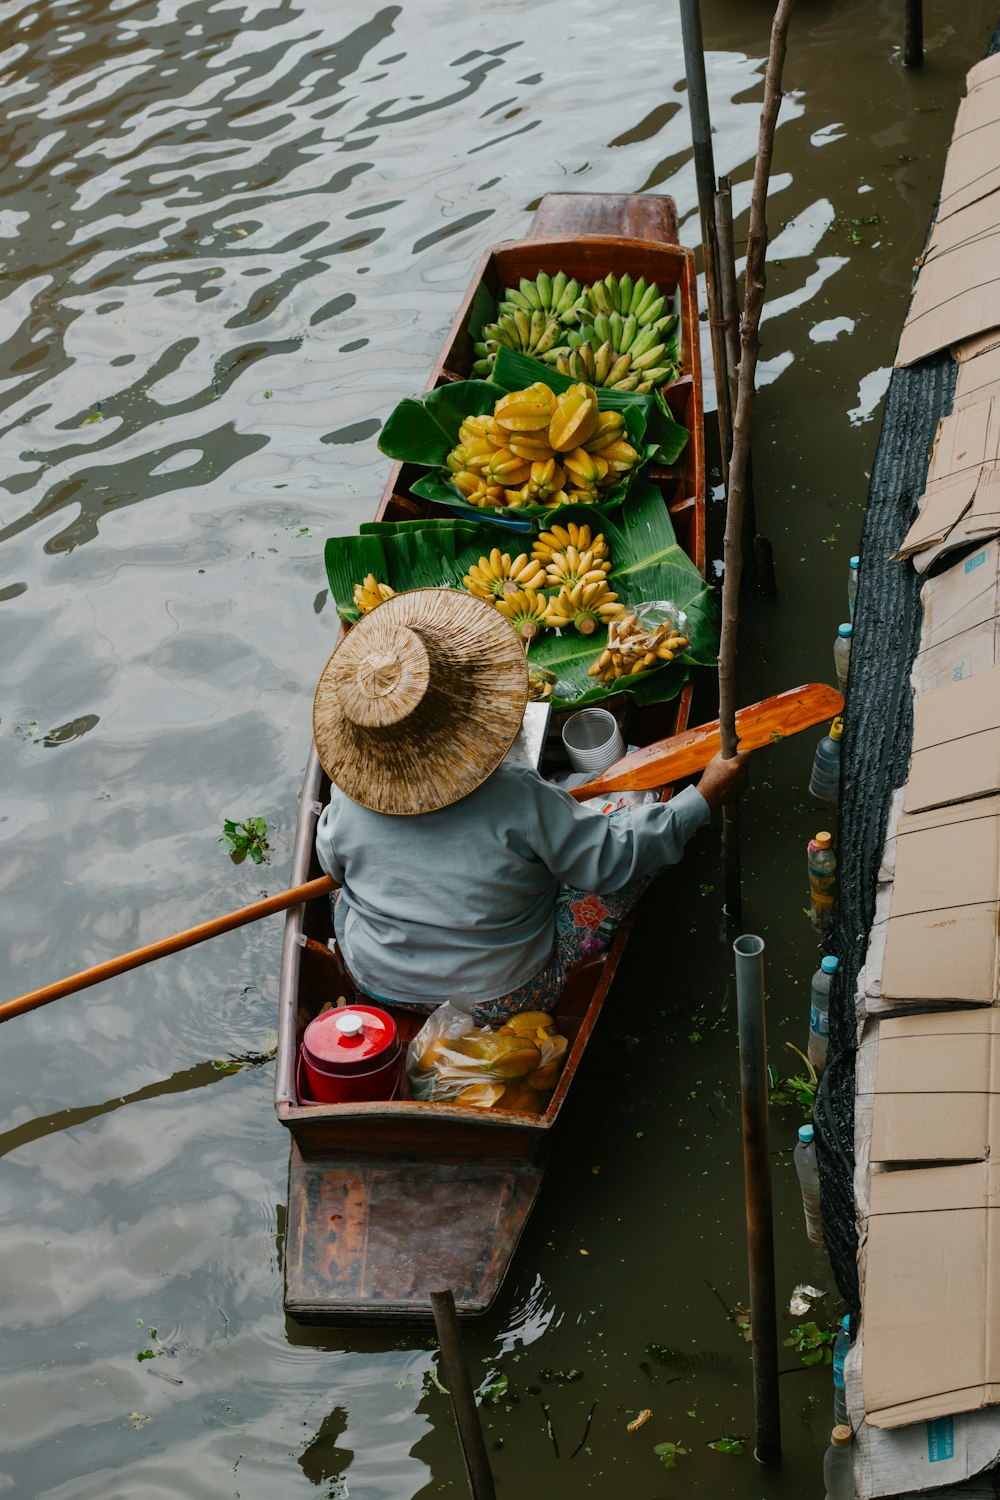 una persona in una barca con banane e altri oggetti